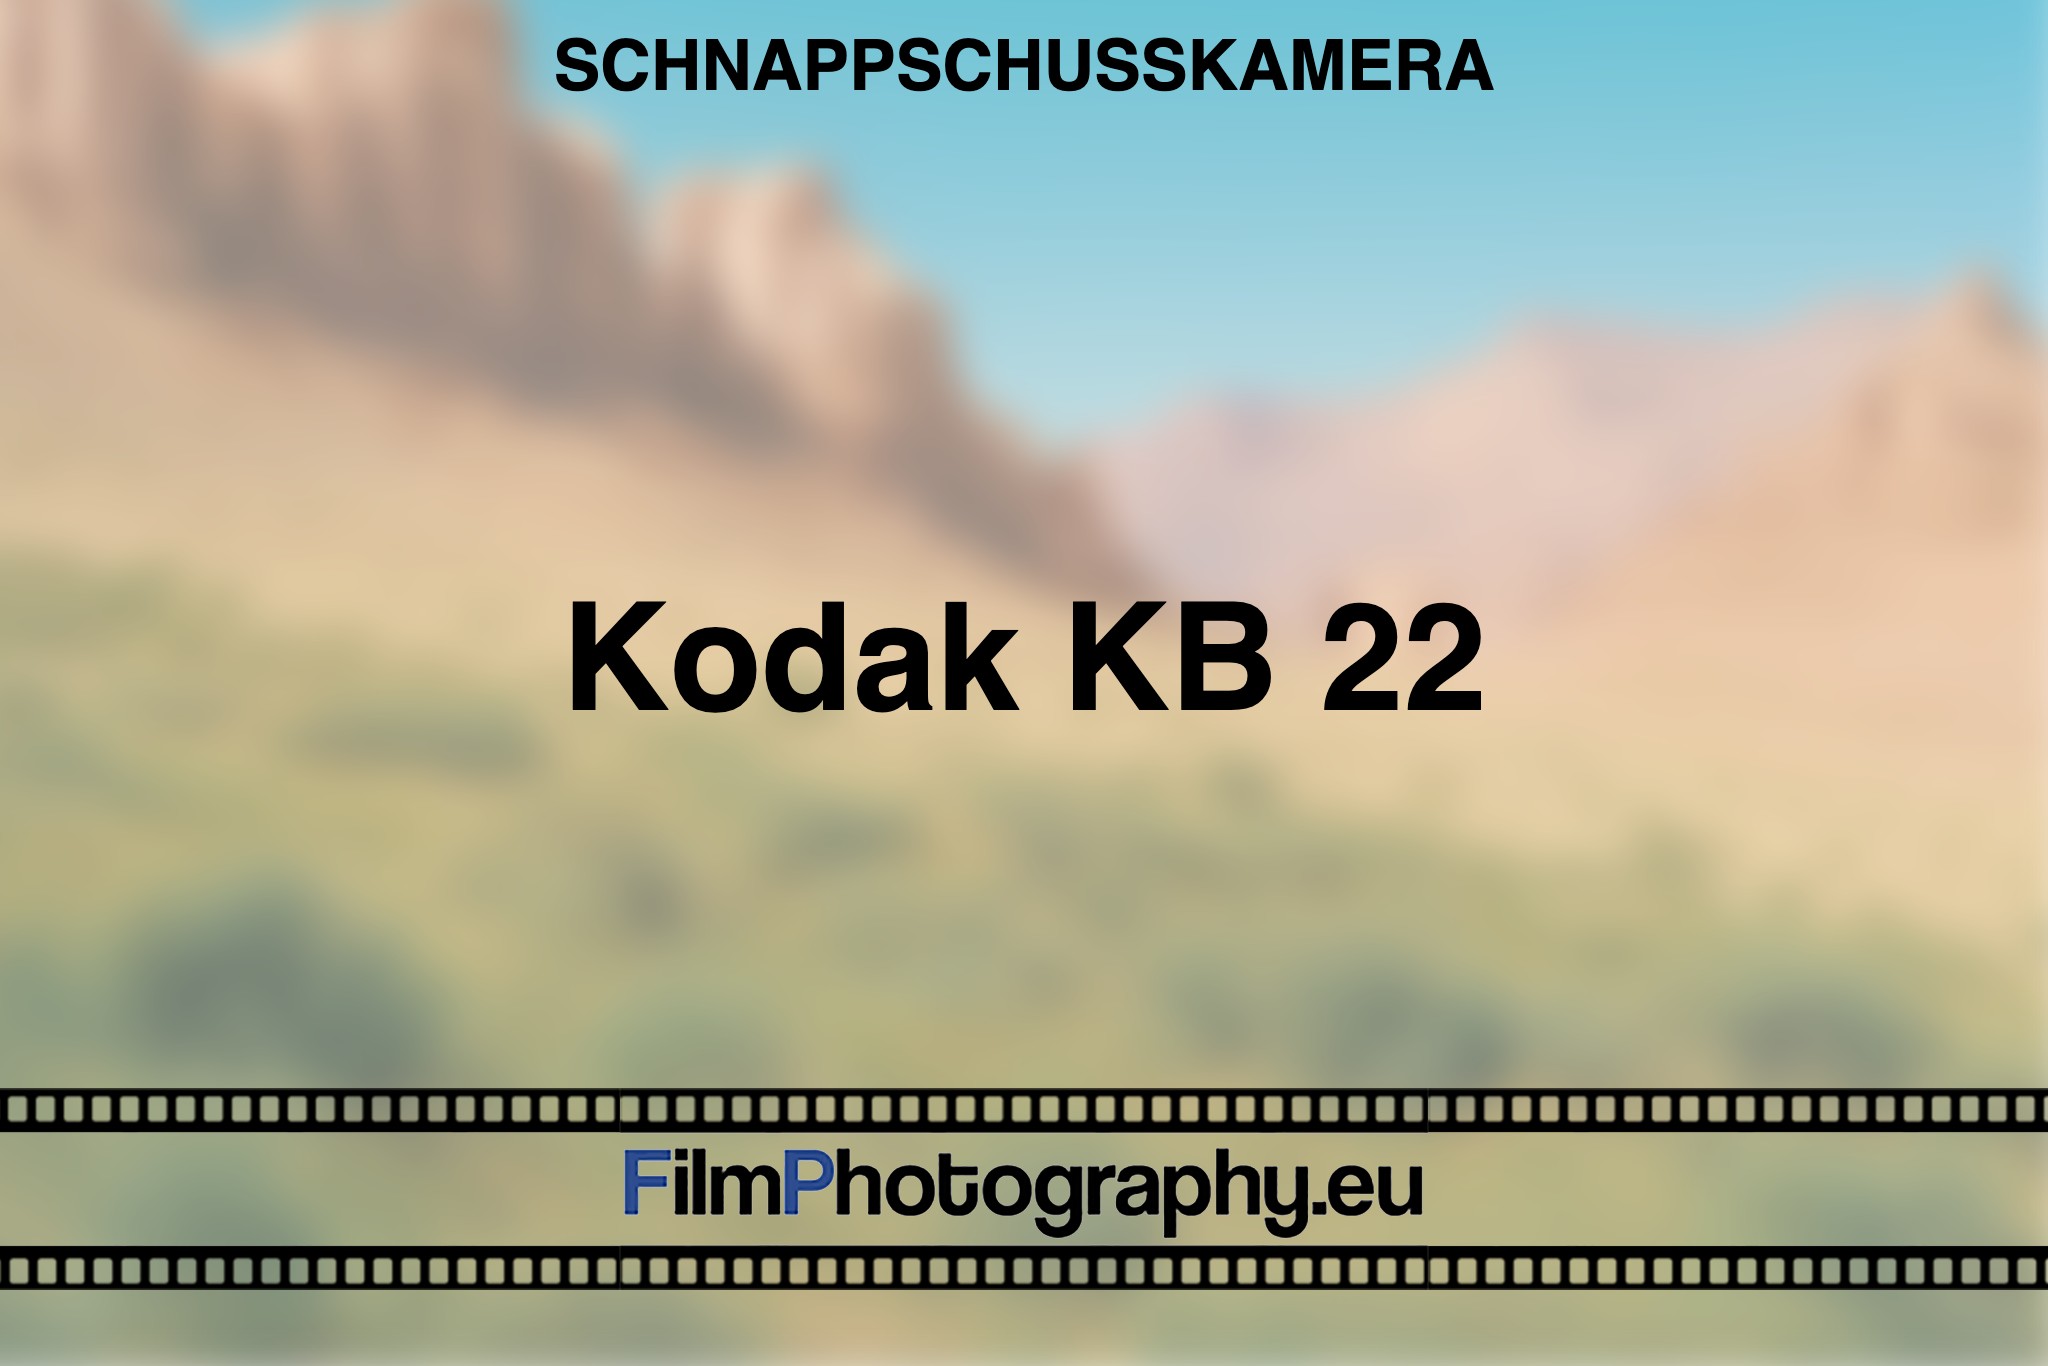 kodak-kb-22-schnappschusskamera-bnv